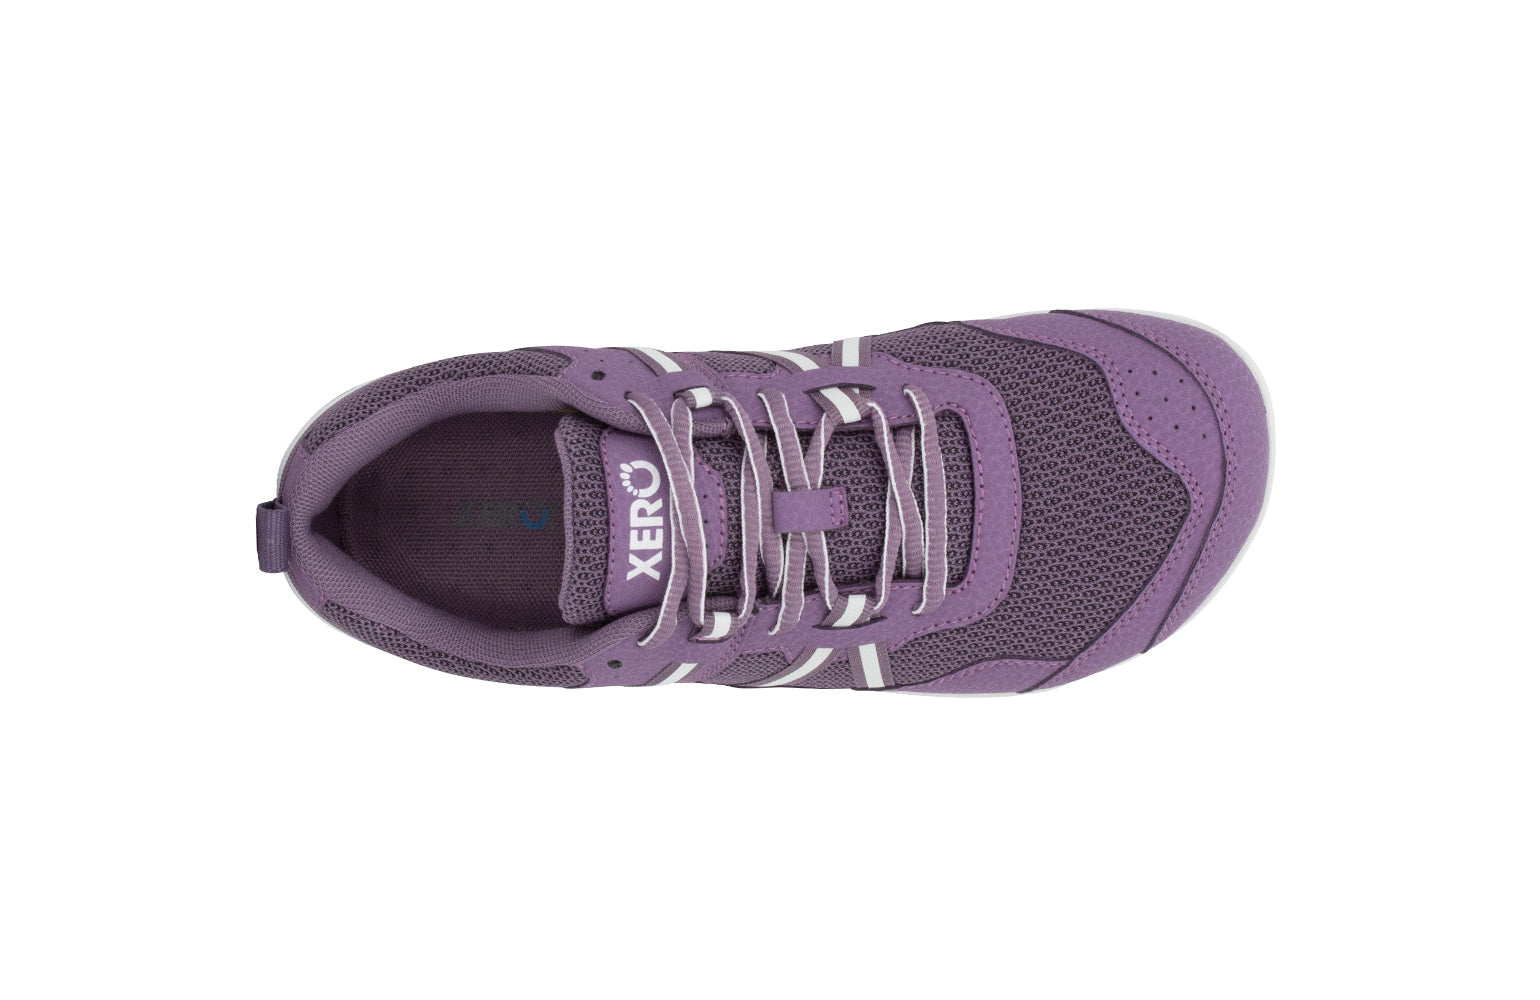 Xero Shoes Prio Kids barfods træningssko/sneakers til børn i farven violet, top